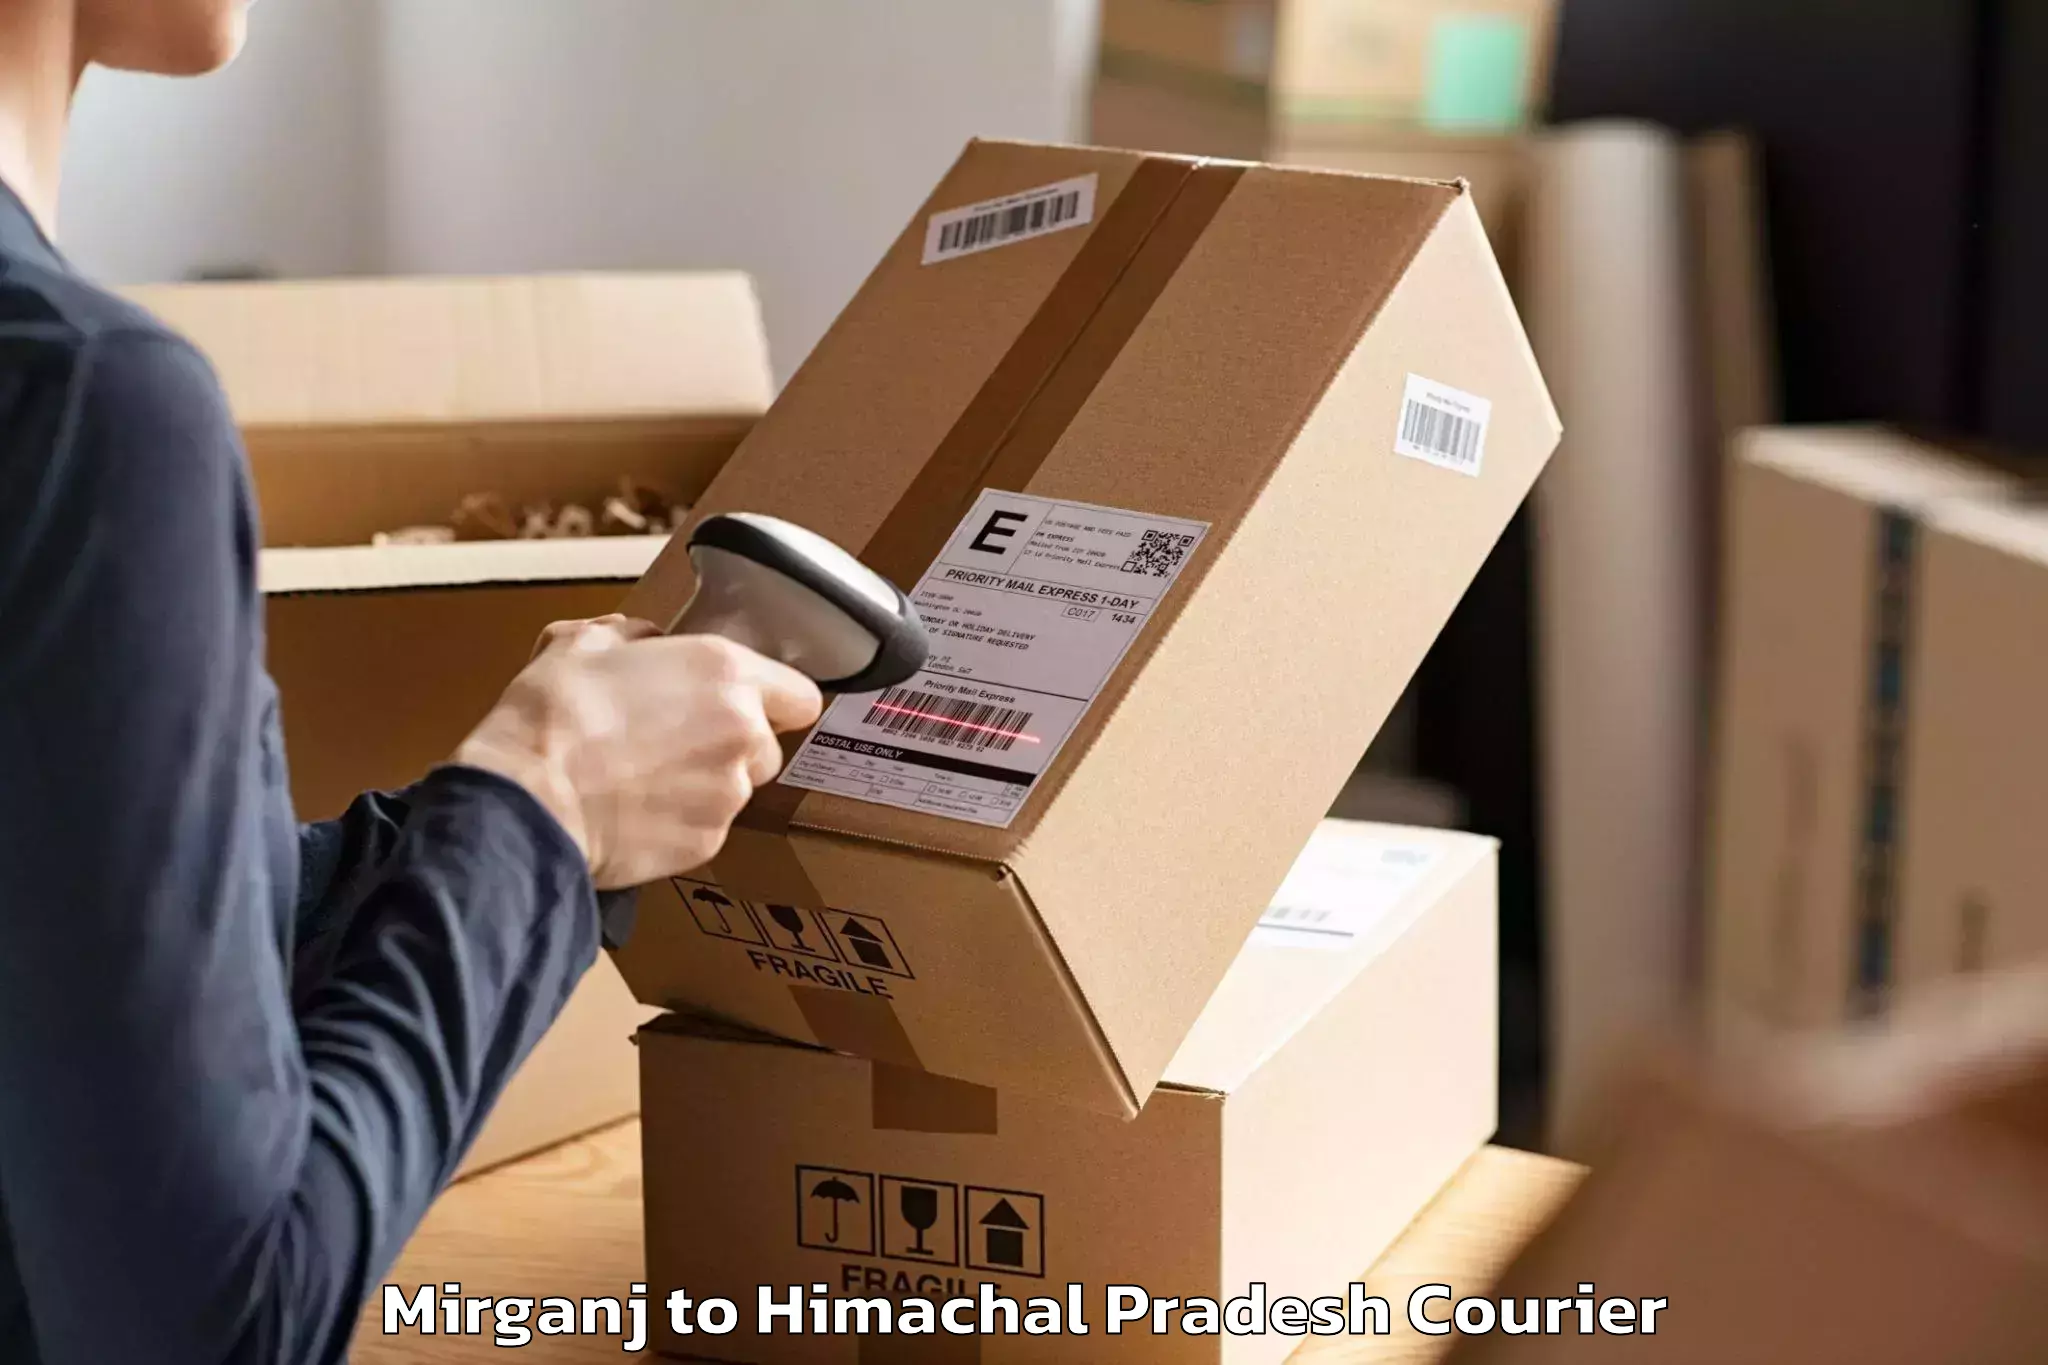 Comprehensive relocation services Mirganj to Una Himachal Pradesh